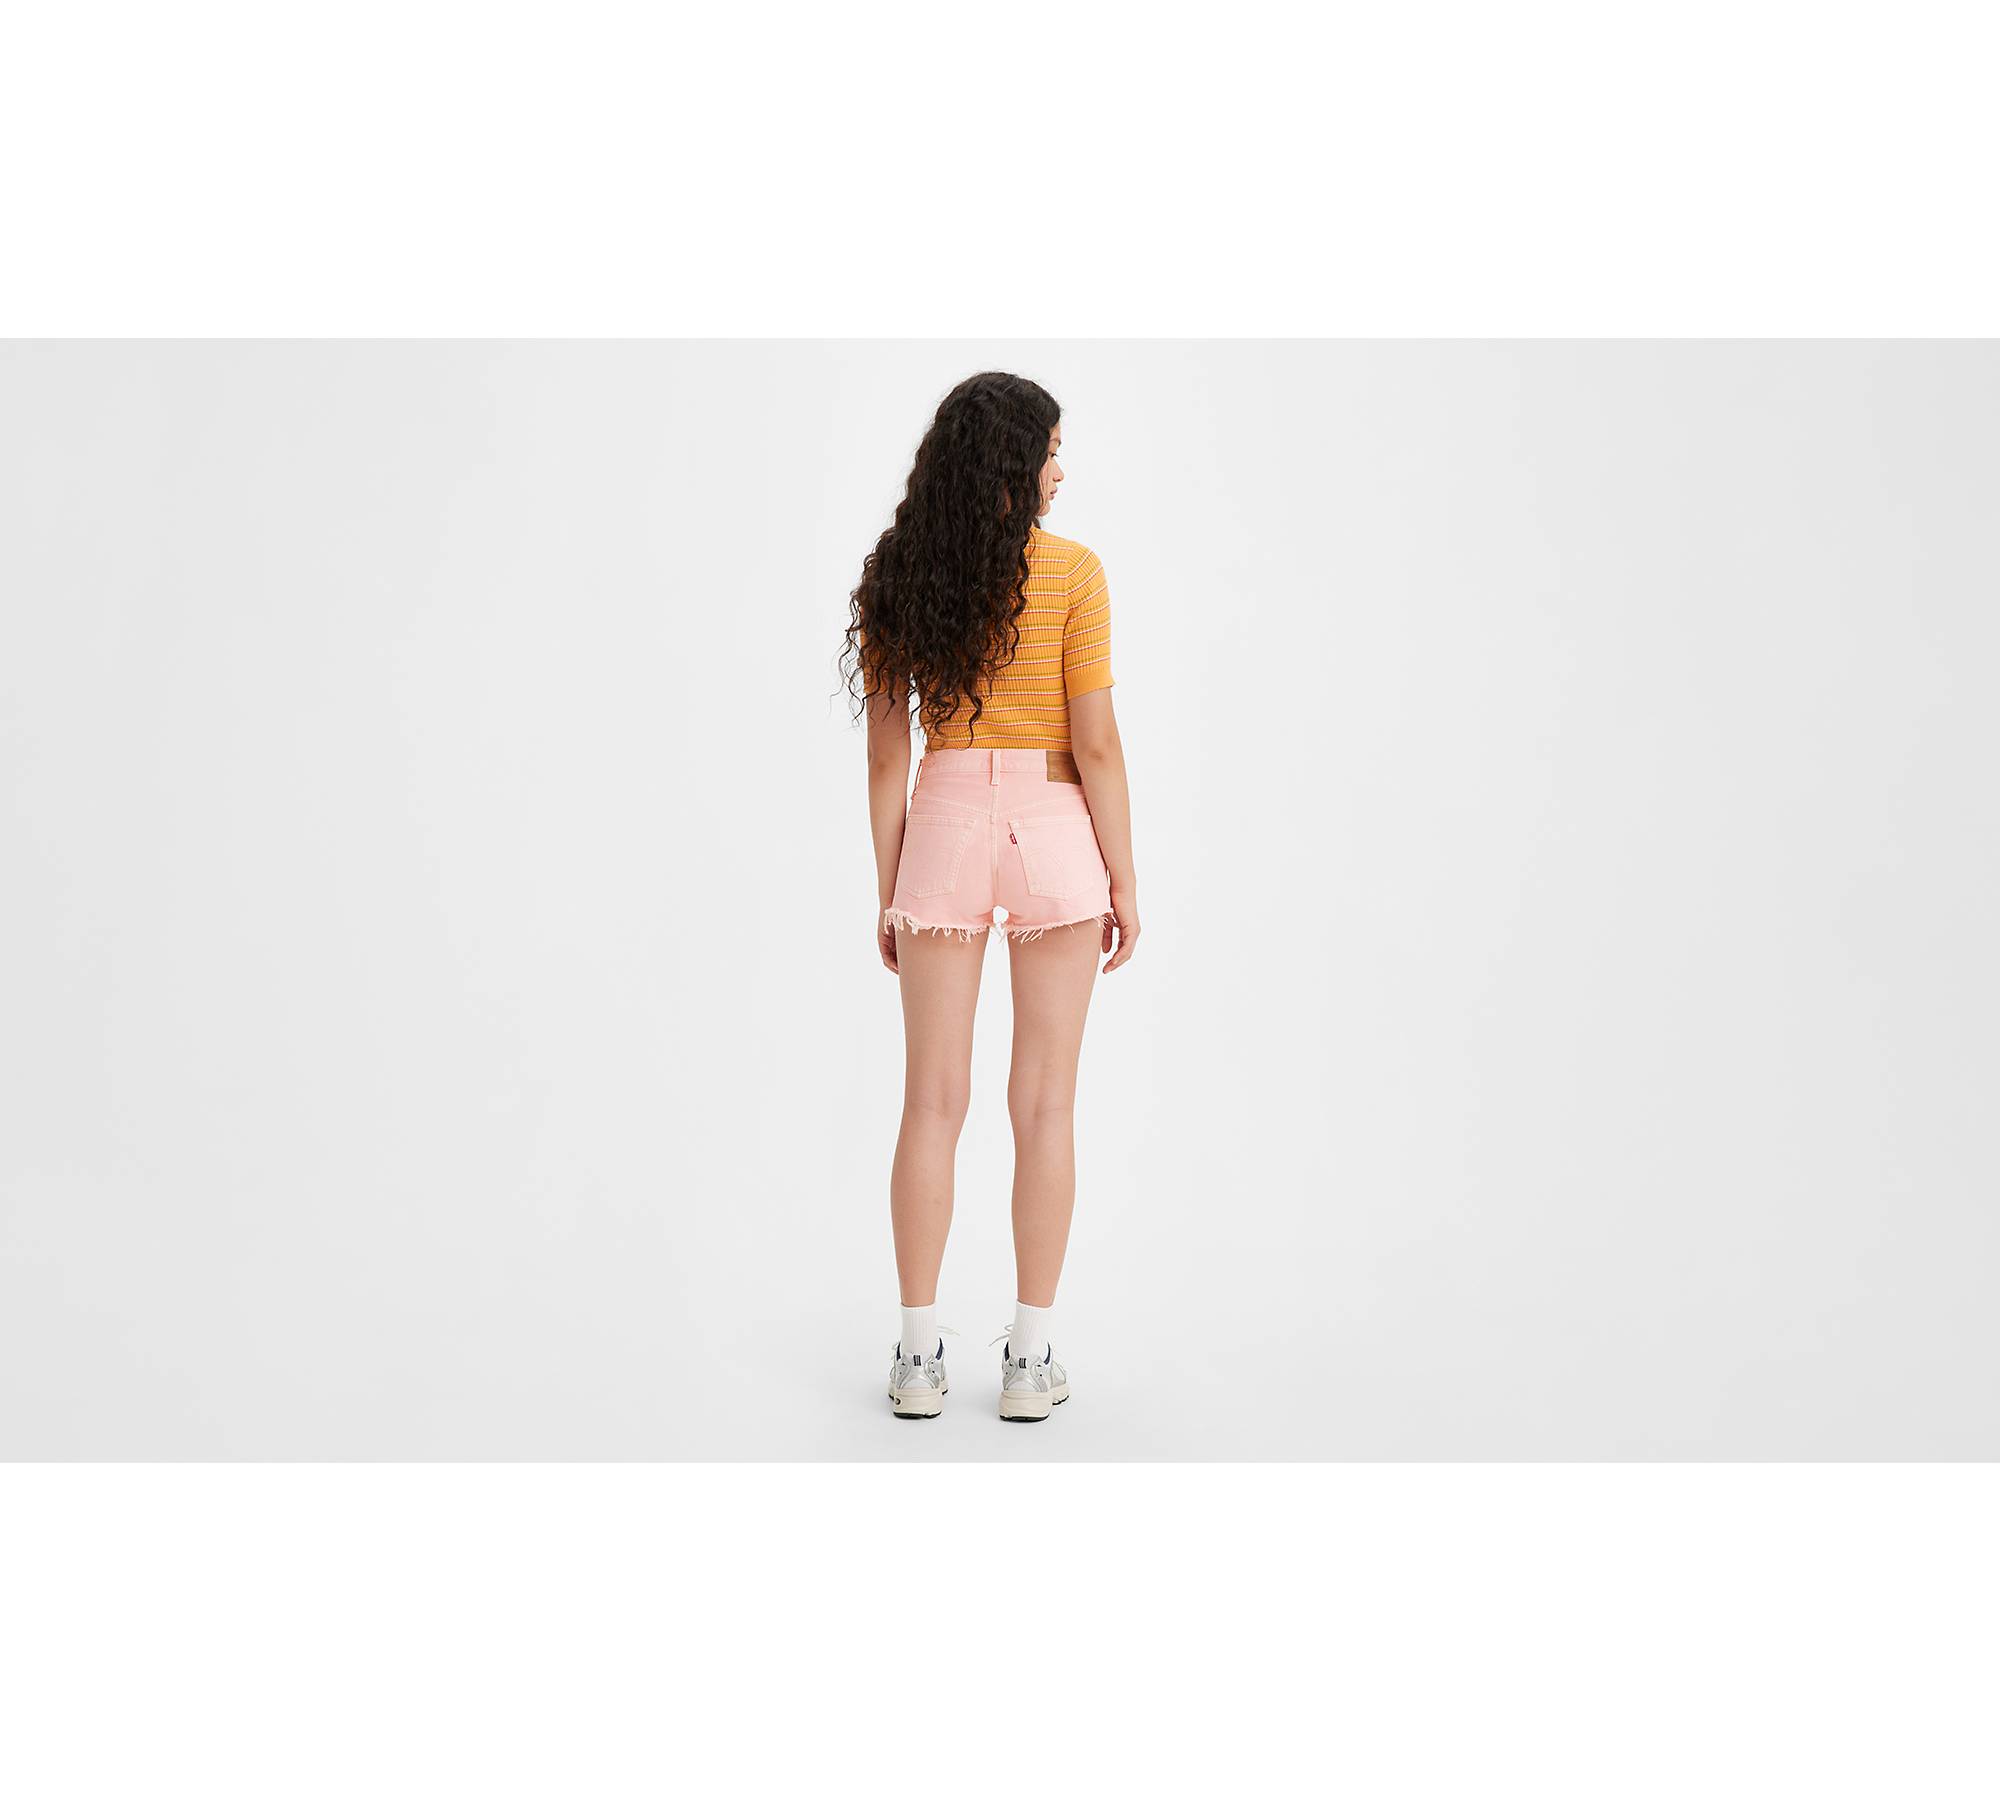 LV pink denim shorts